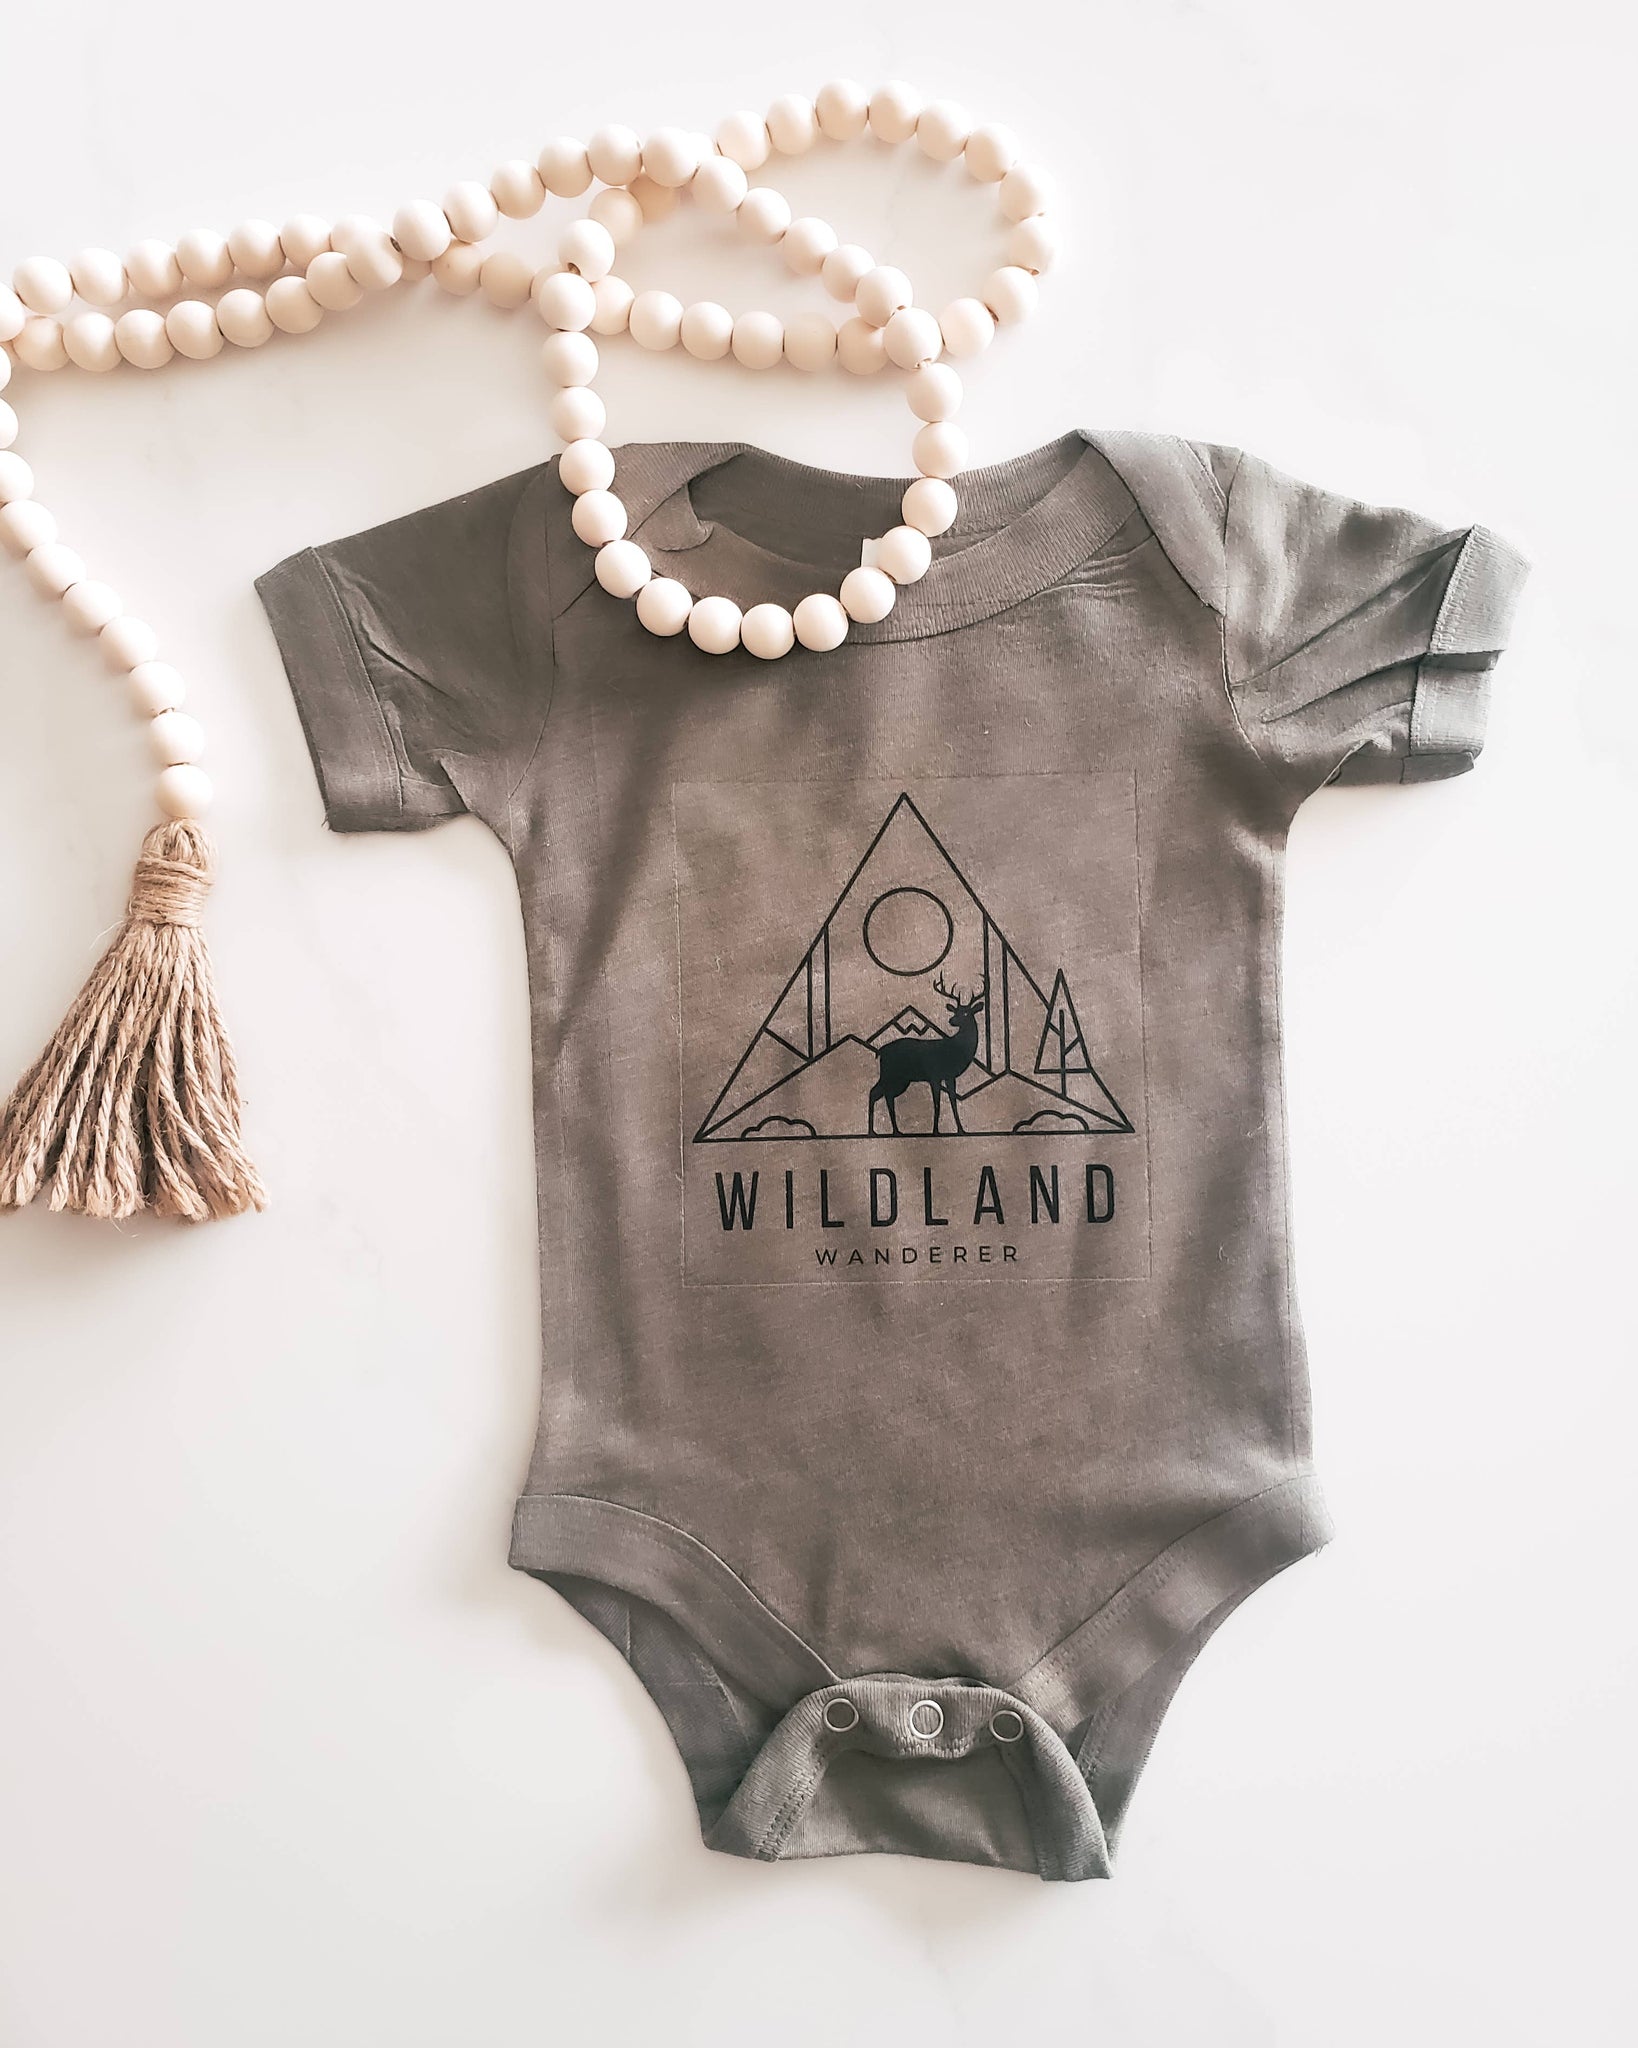 Brand of Bliss Wildland Wanderer l Baby Onesie